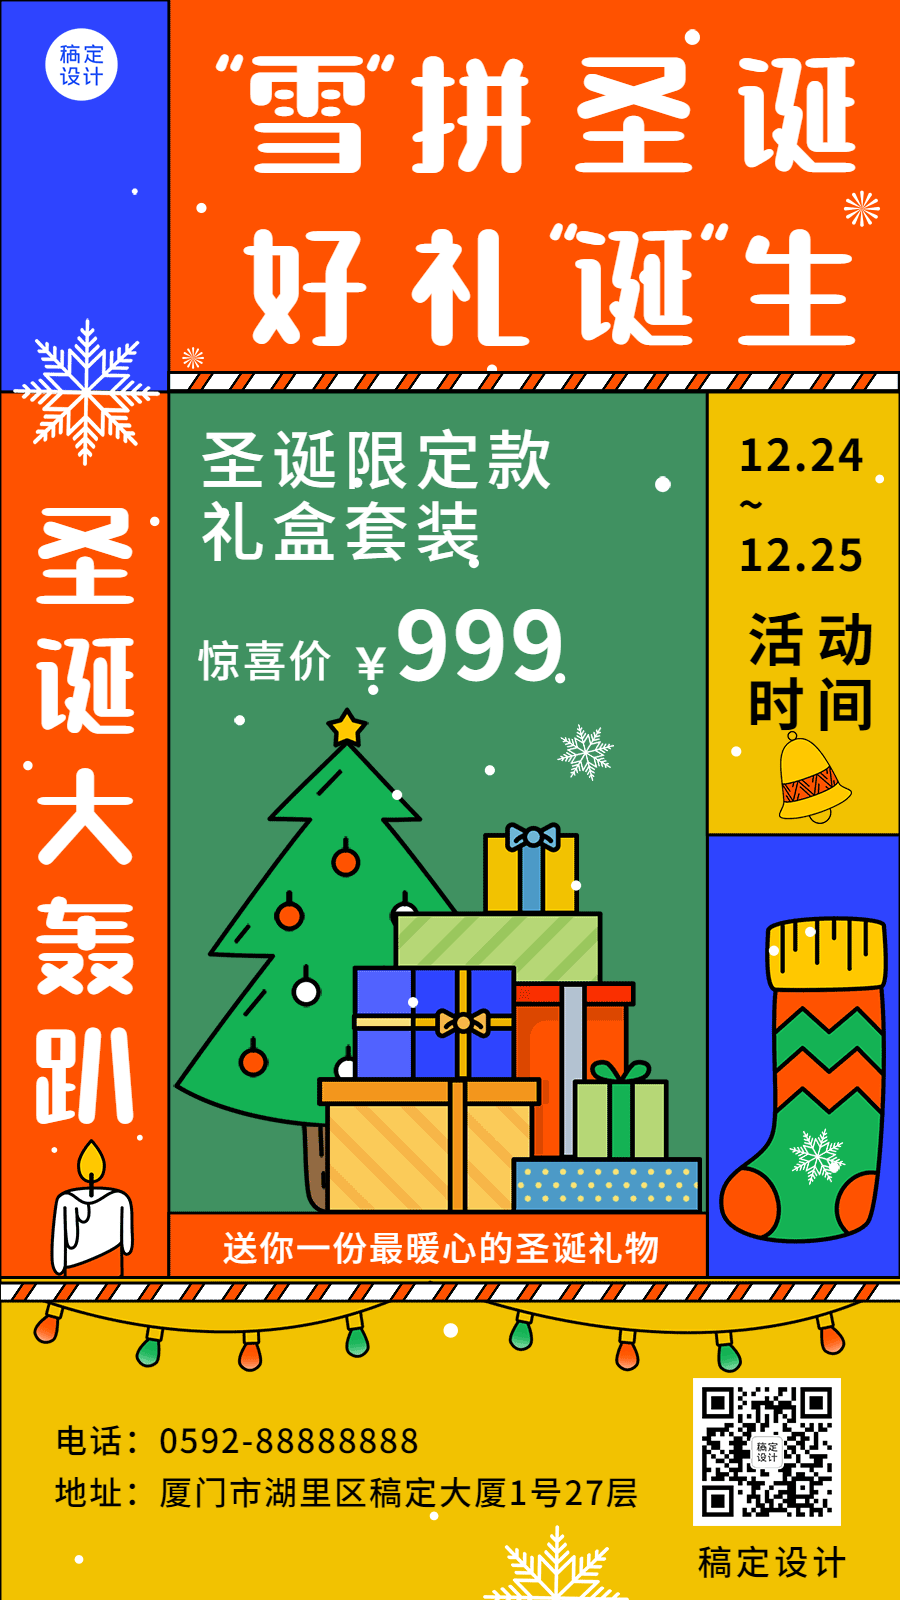 圣诞节应活动营销特价GIF动态海报